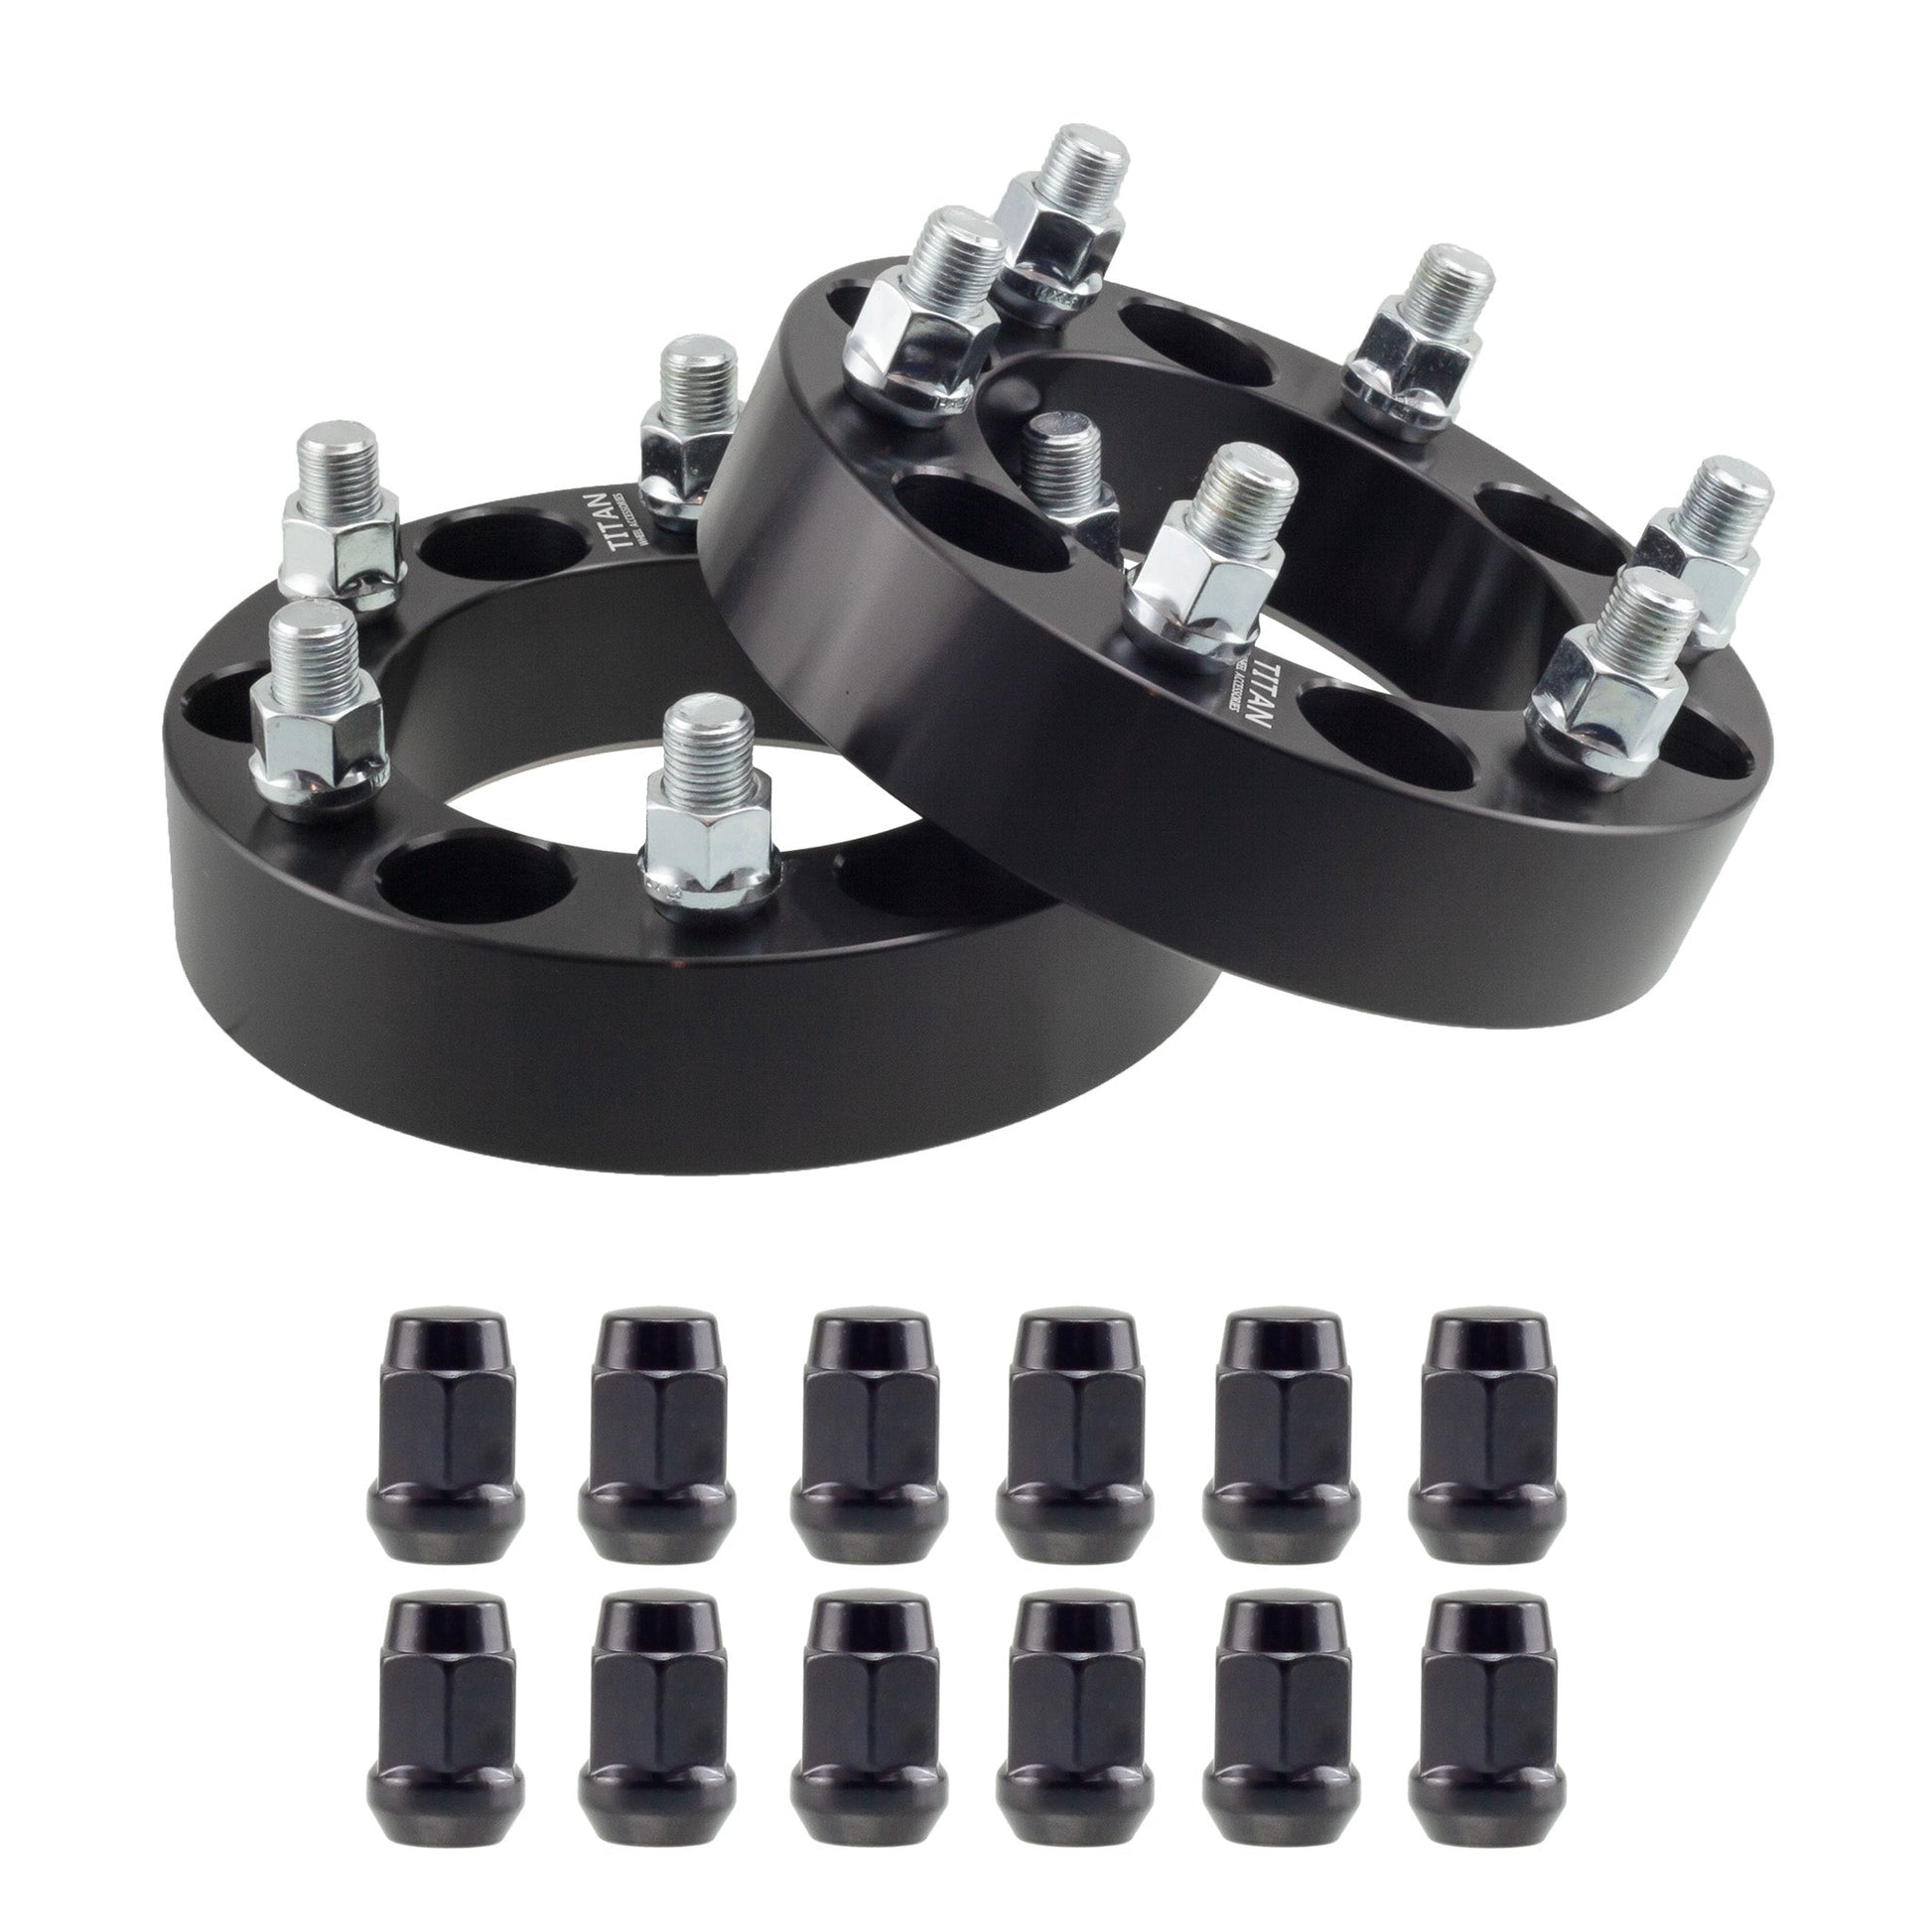 38mm (1.5") Titan Wheel Spacers for Infiniti QX56 Nissan Armada Titan | 6x5.5 (6x139.7) | 77.8 Hubcentric |12x1.25 Studs | Titan Wheel Accessories